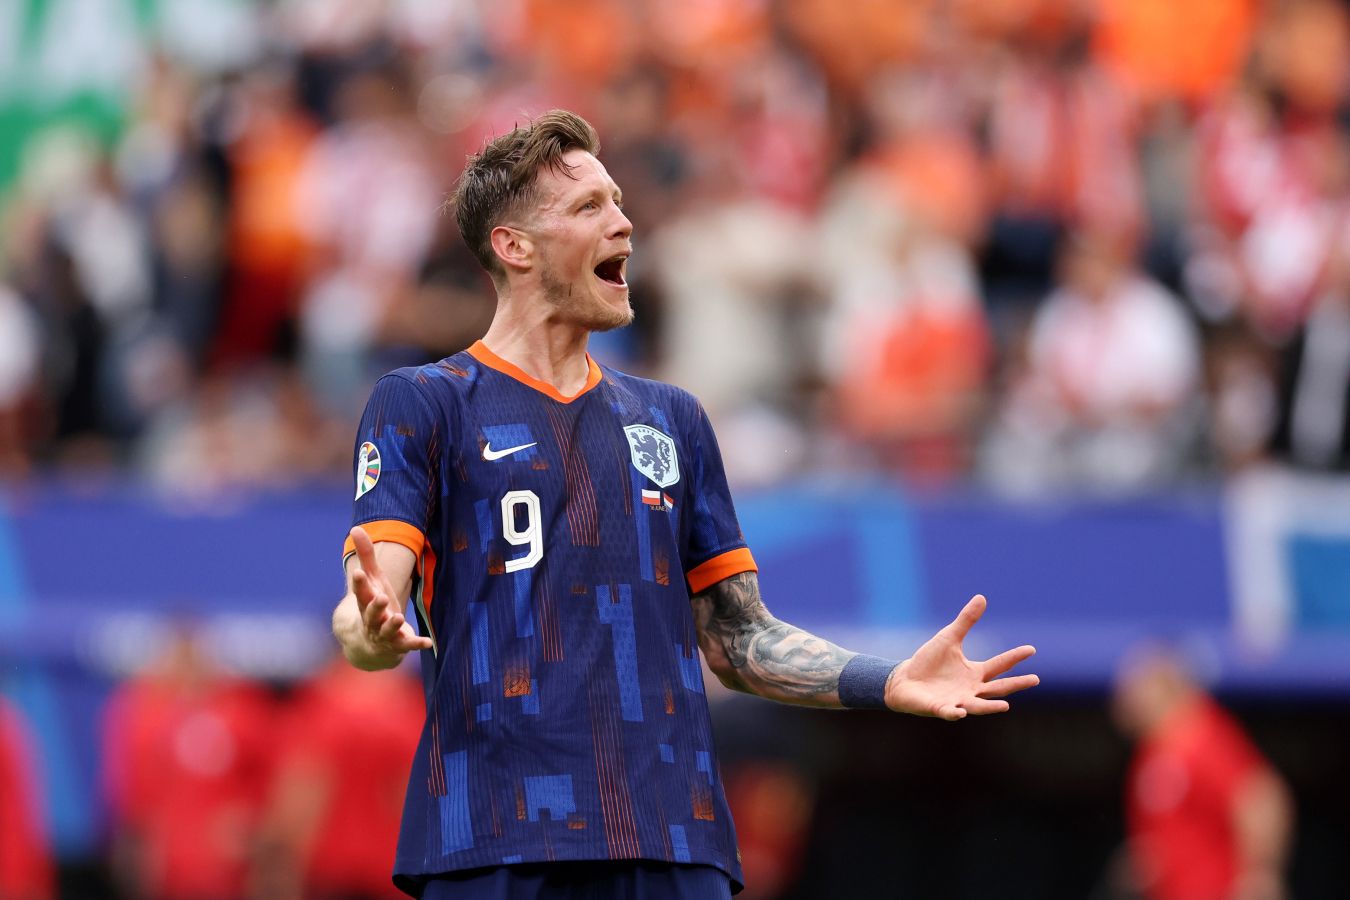 Игрок сборной Нидерландов Вегорст забил победный гол первым касанием после выхода на поле